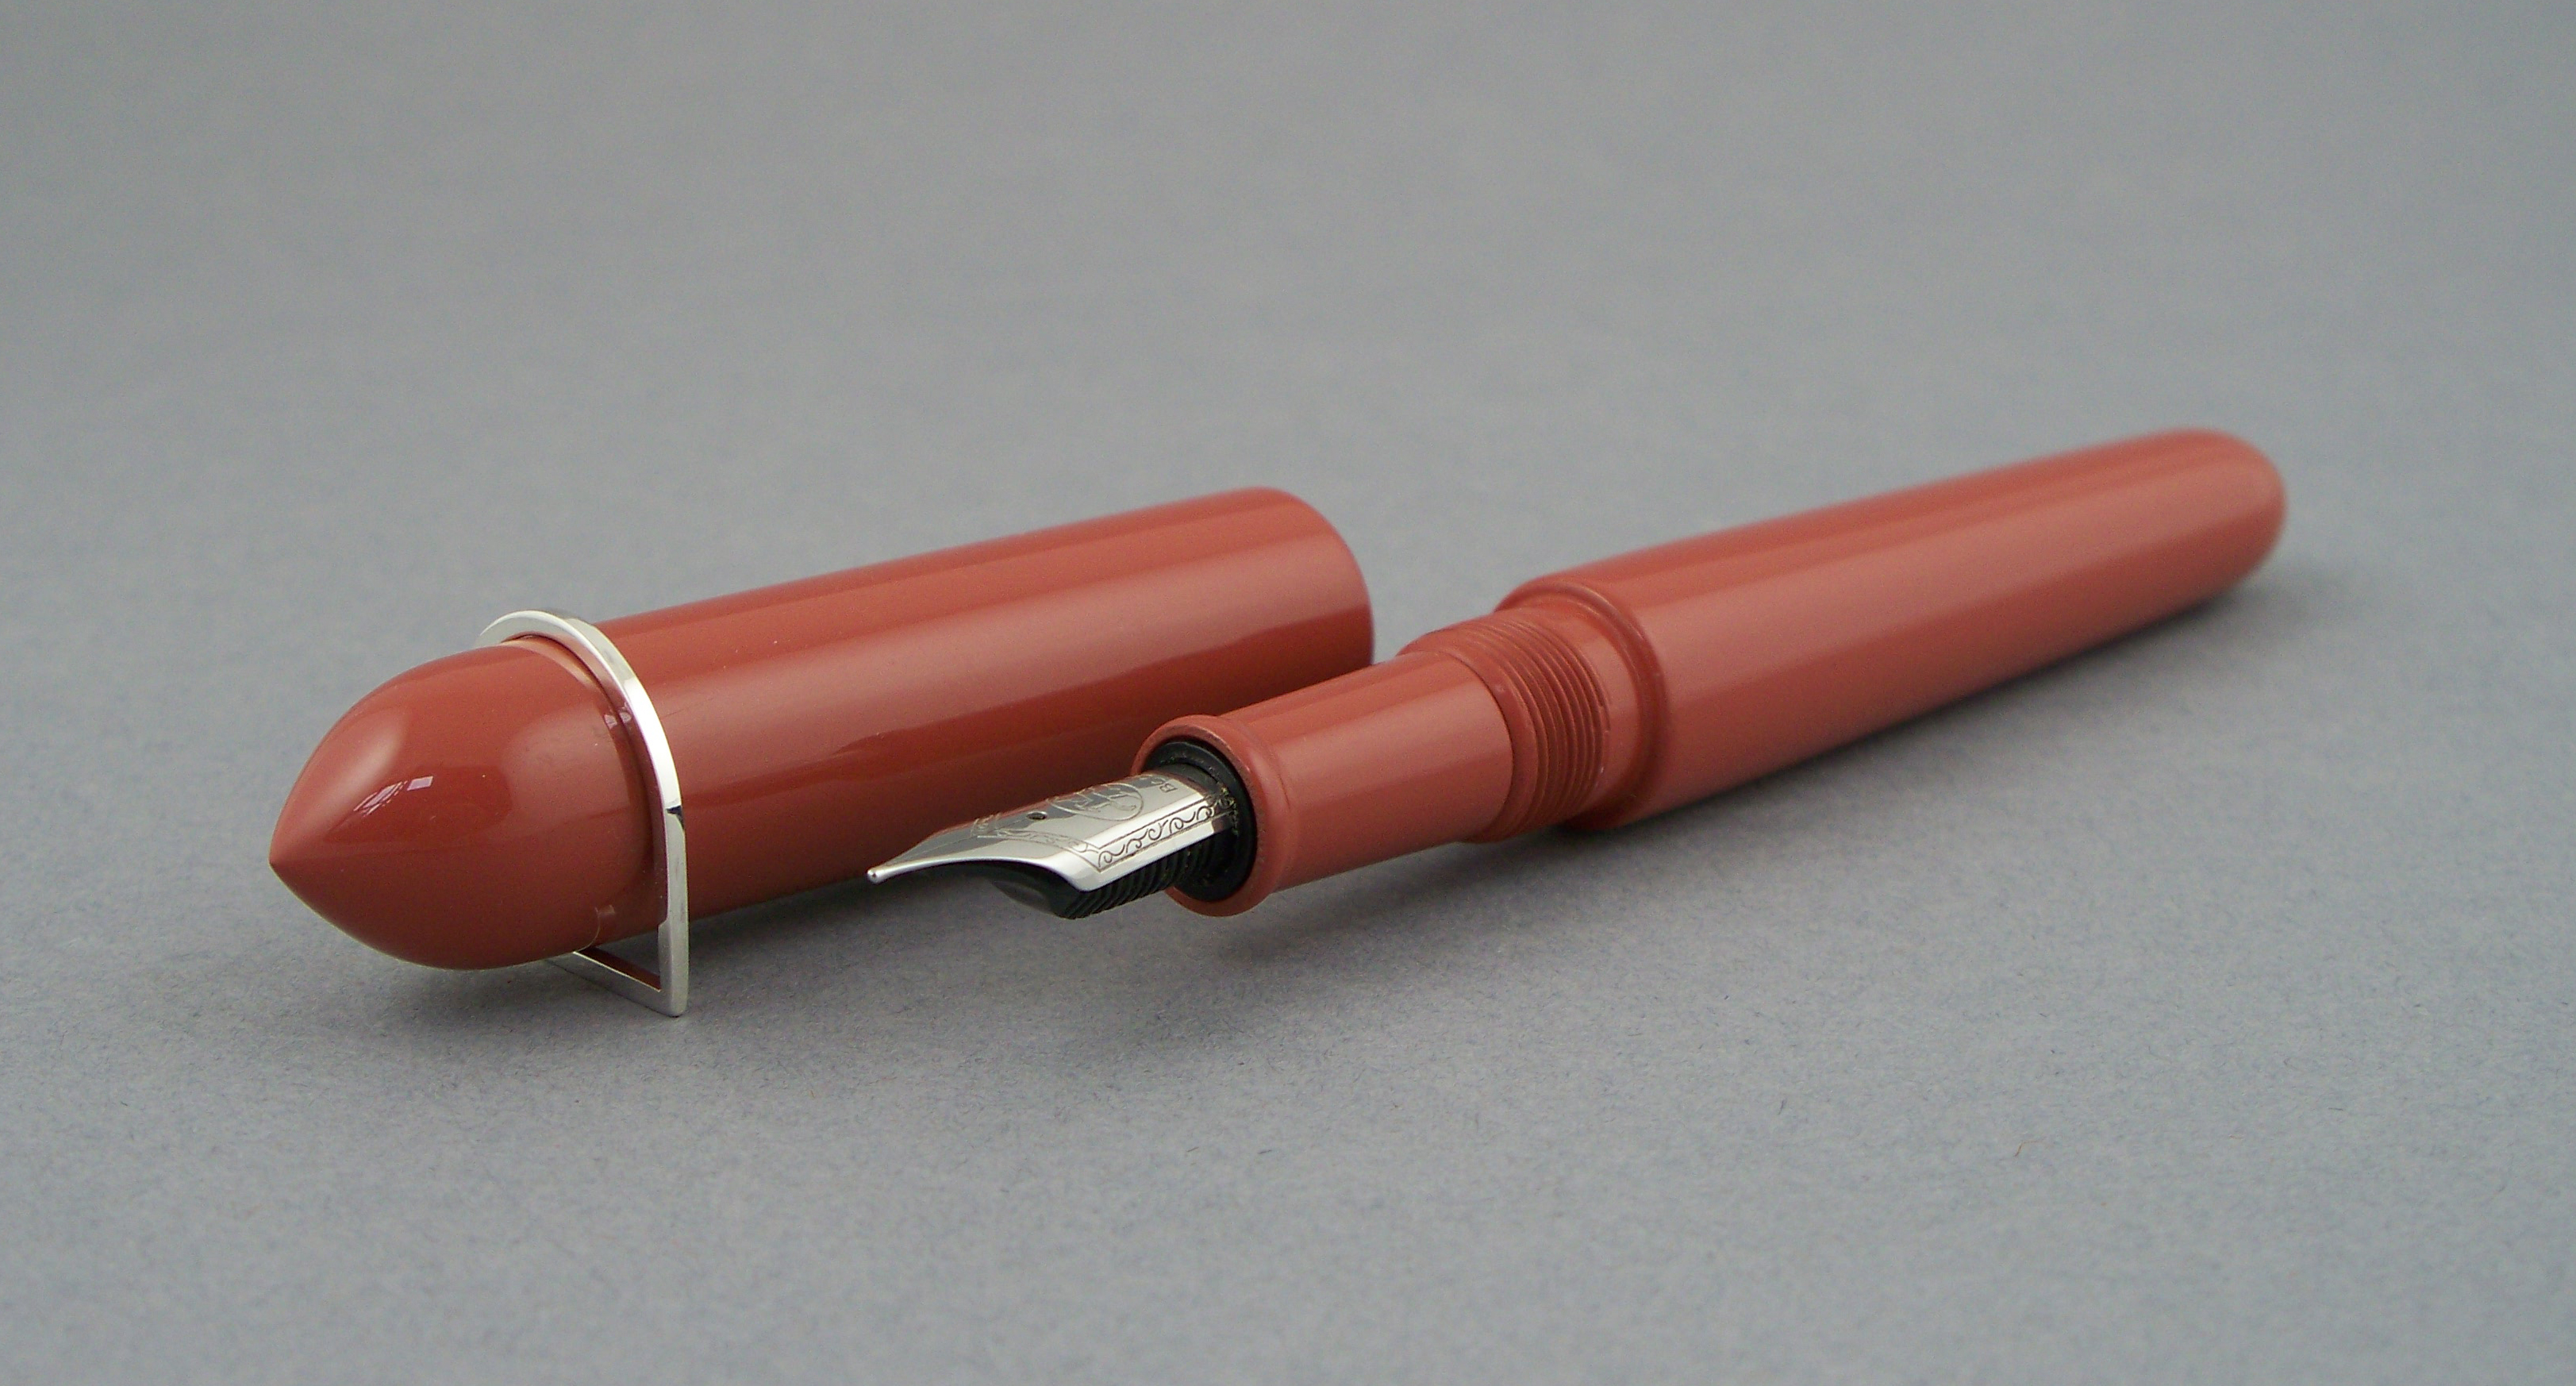 Streamline model pen with silver rollstopper